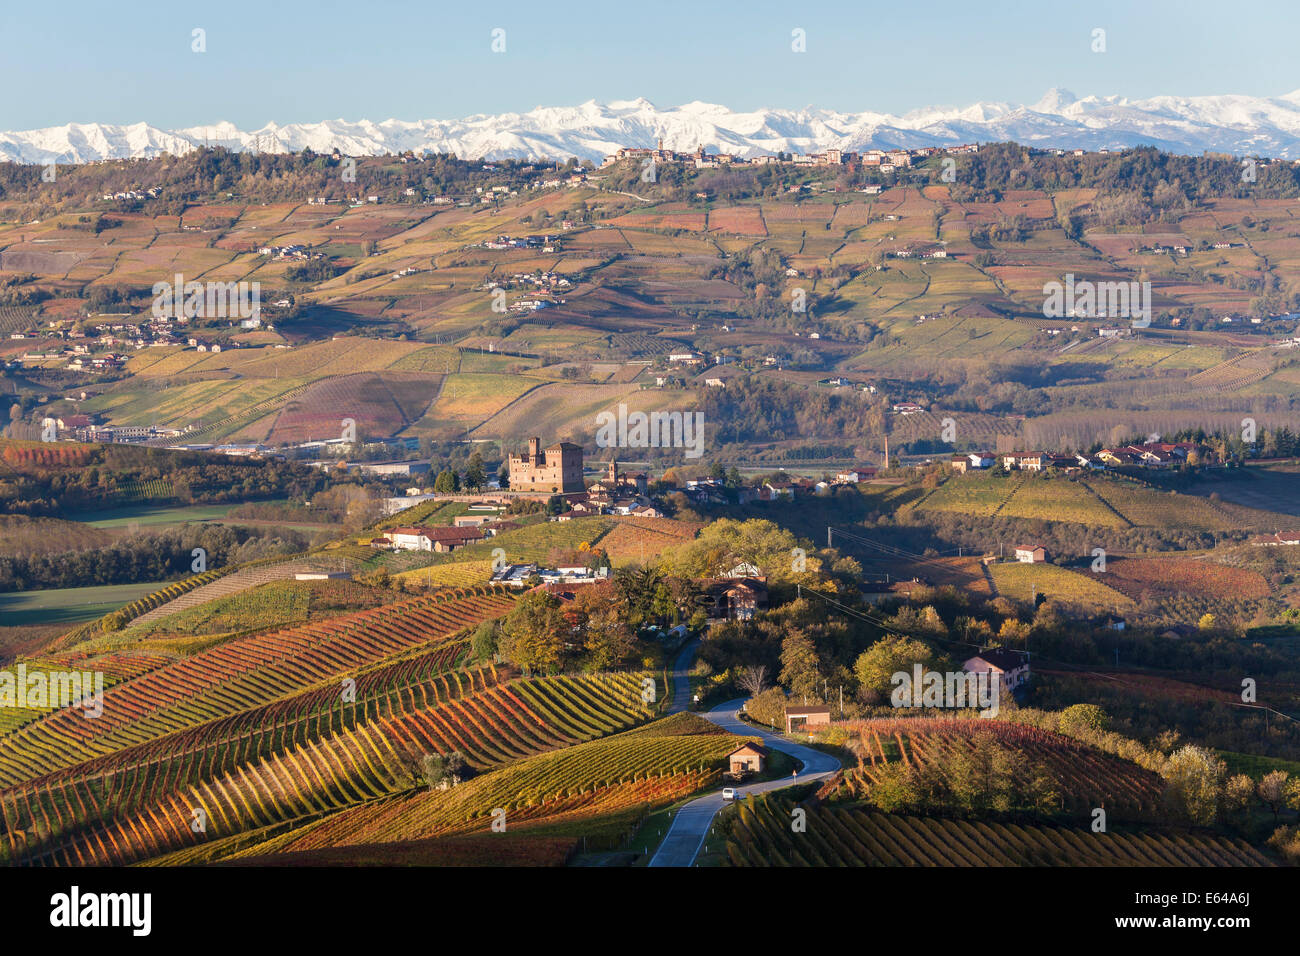 Los viñedos y el Castillo de Grinzane Cavour, distrito de Cuneo, Langhe, nr Alba, Langhe, Piamonte (o Piemonte o Piemonte), Italia Foto de stock